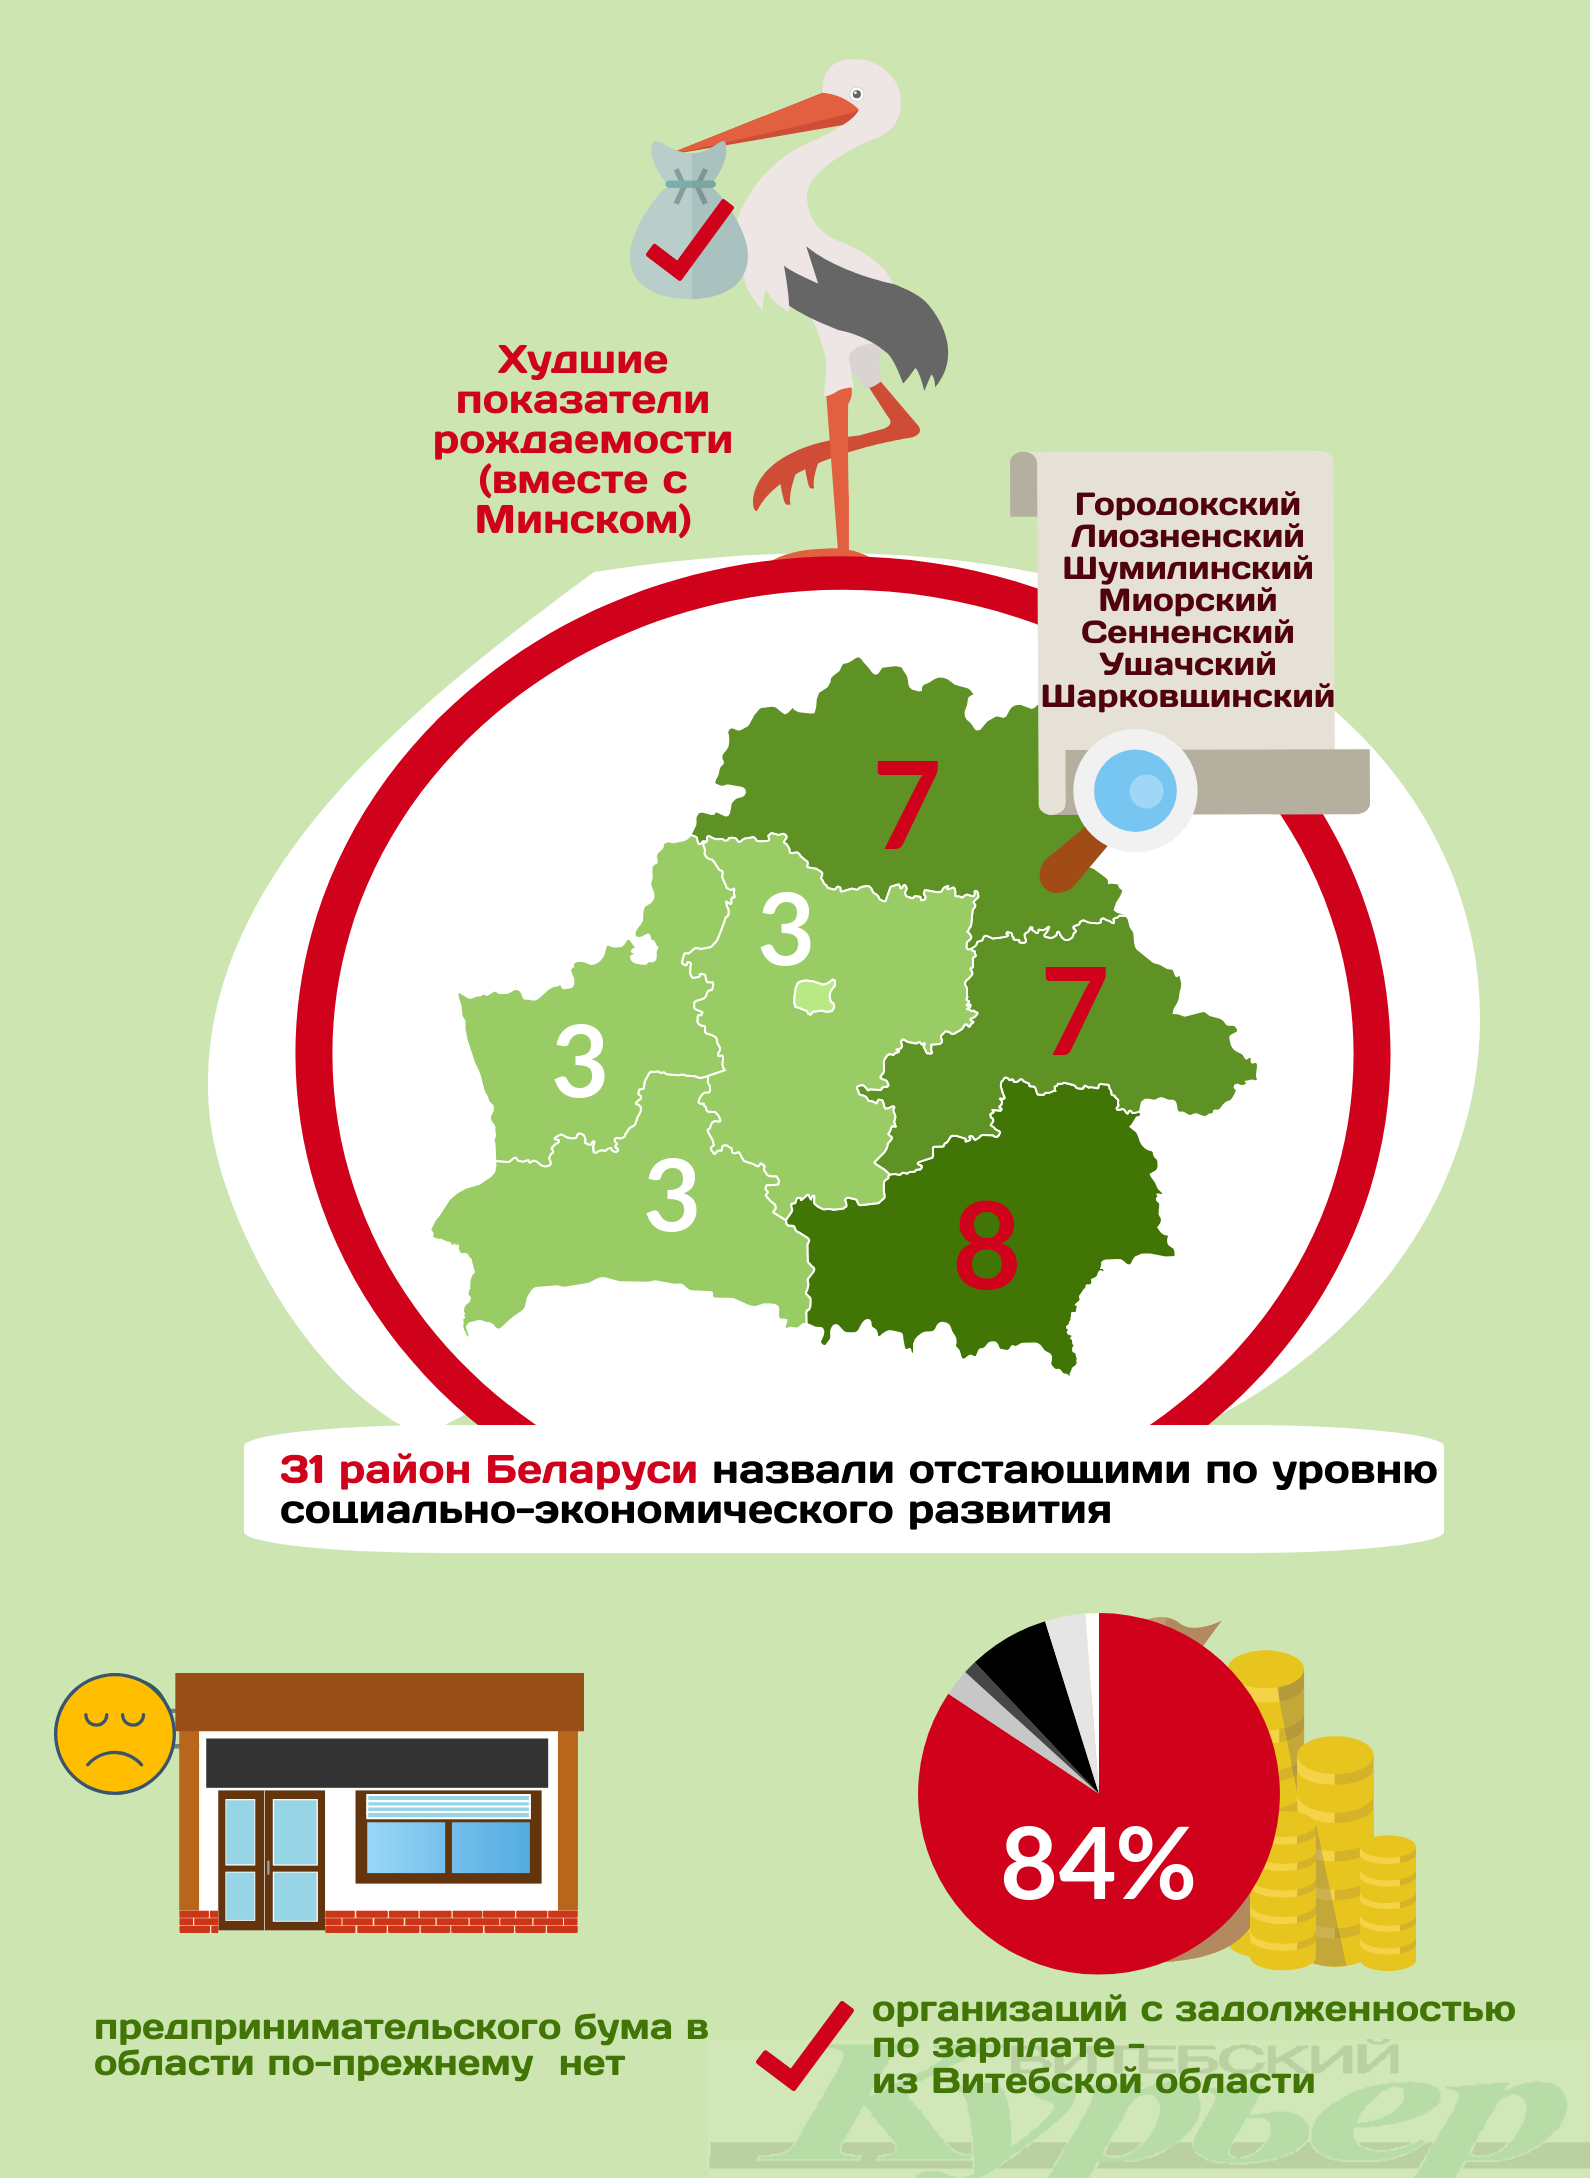 Витебская область по 5 показателям - одна из худших в Беларуси